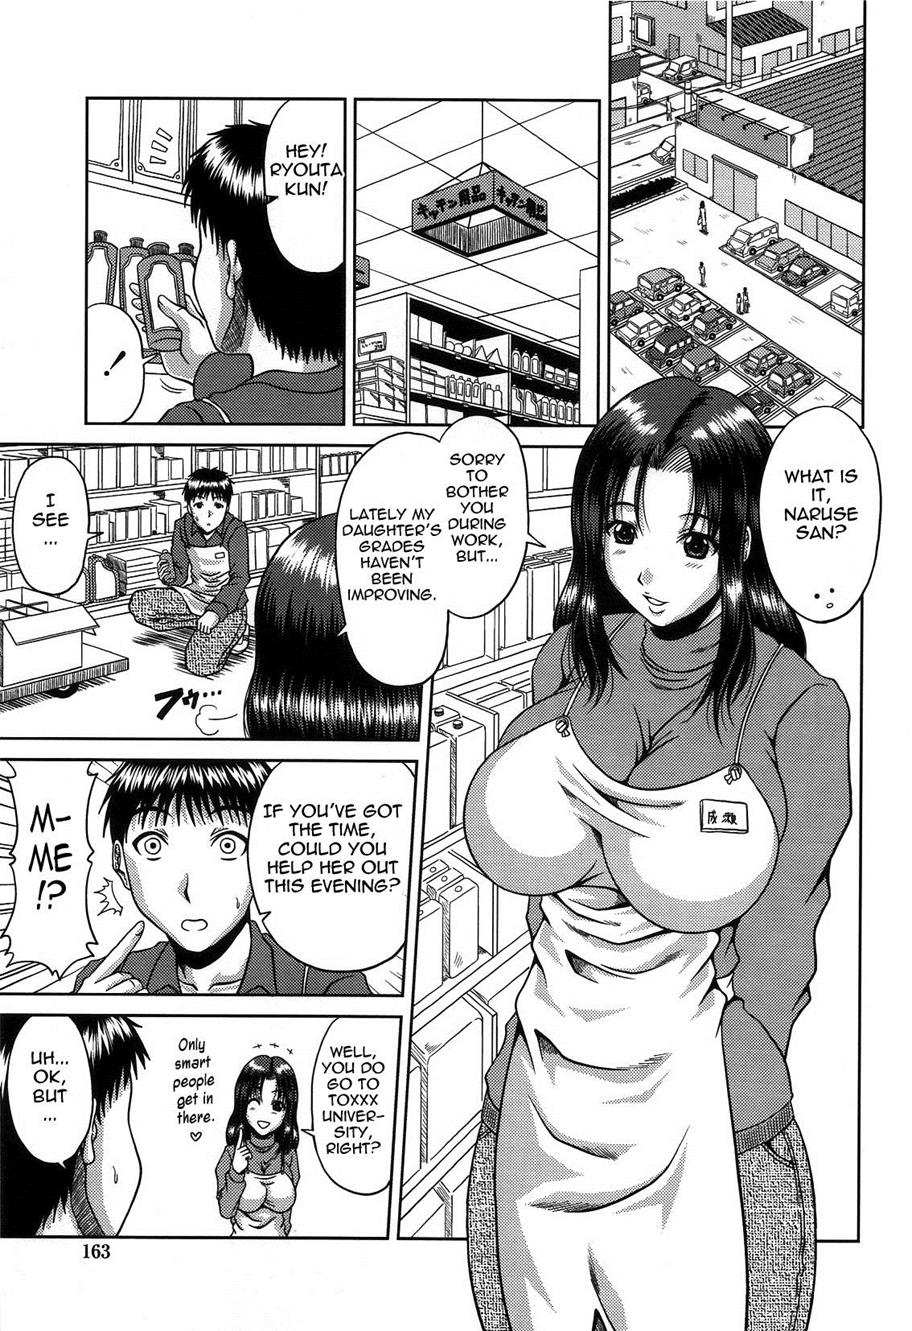 Reading Bitch Hi School Original Hentai By Kai Hiroyuki 9 Beware 